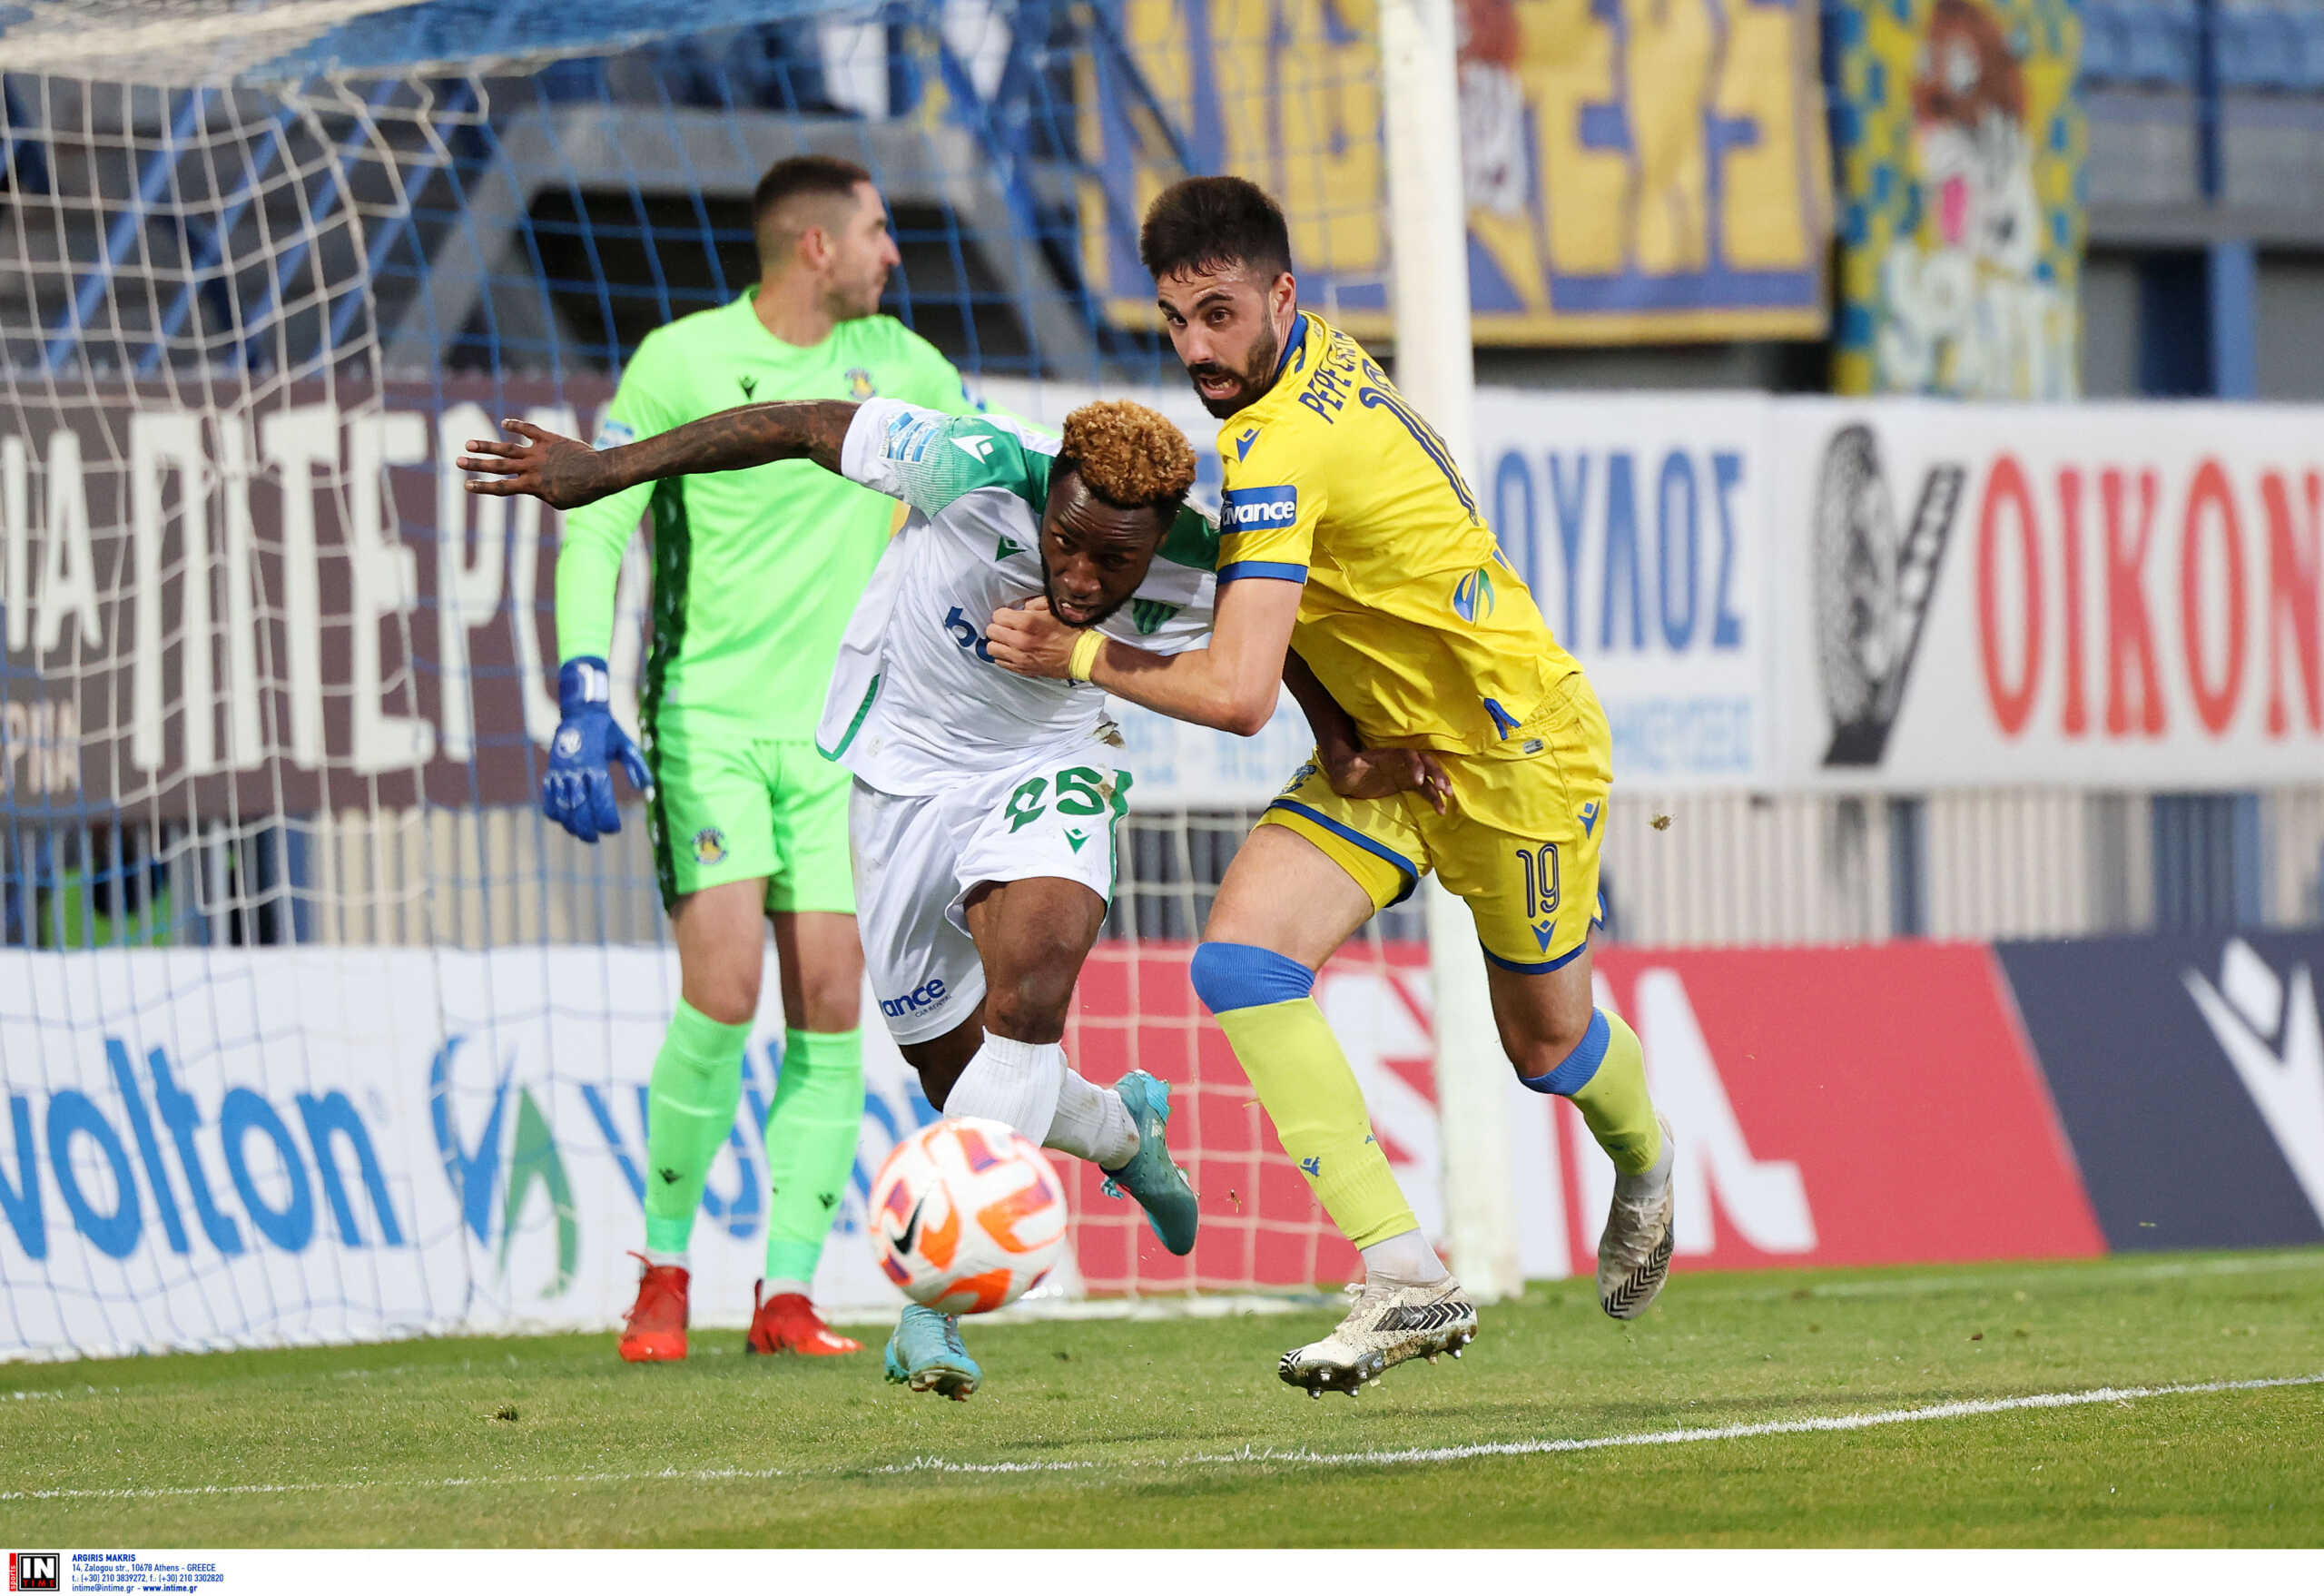 Αστέρας Τρίπολης – Λεβαδειακός 0-0: Βαθμός για τους γηπεδούχους παρά την αποβολή